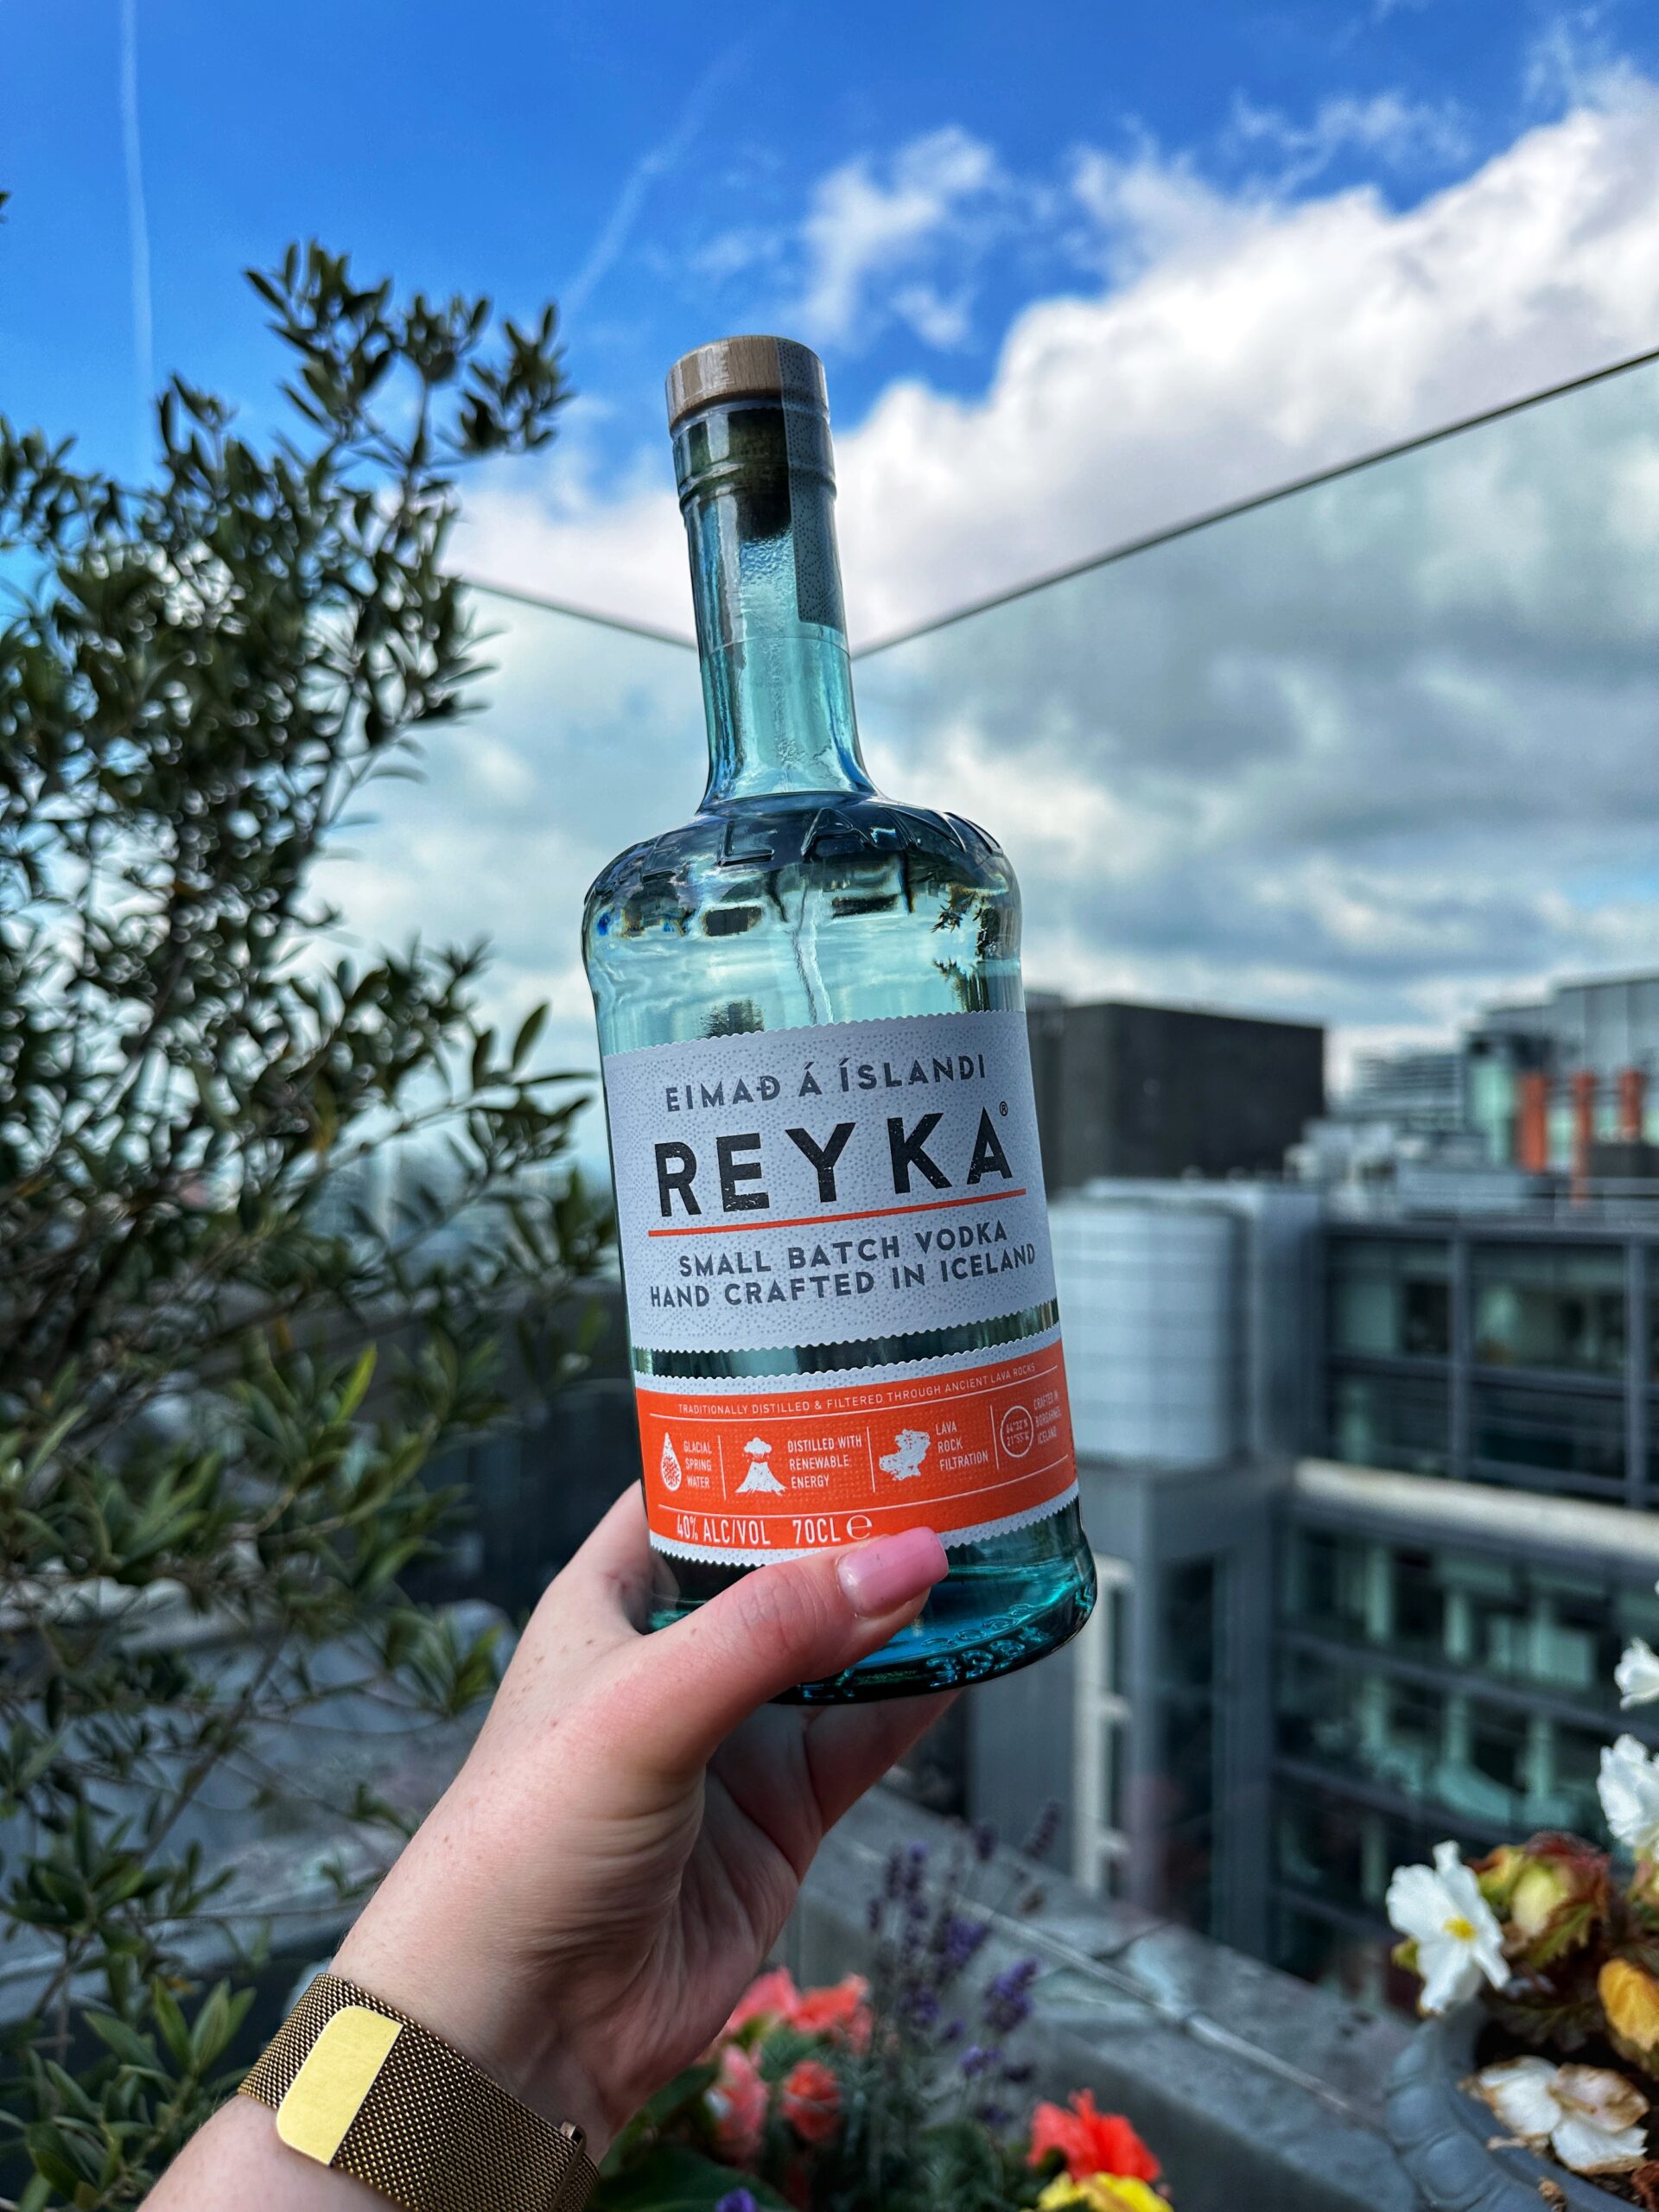 Where to find Reyka Vodka in Manchester